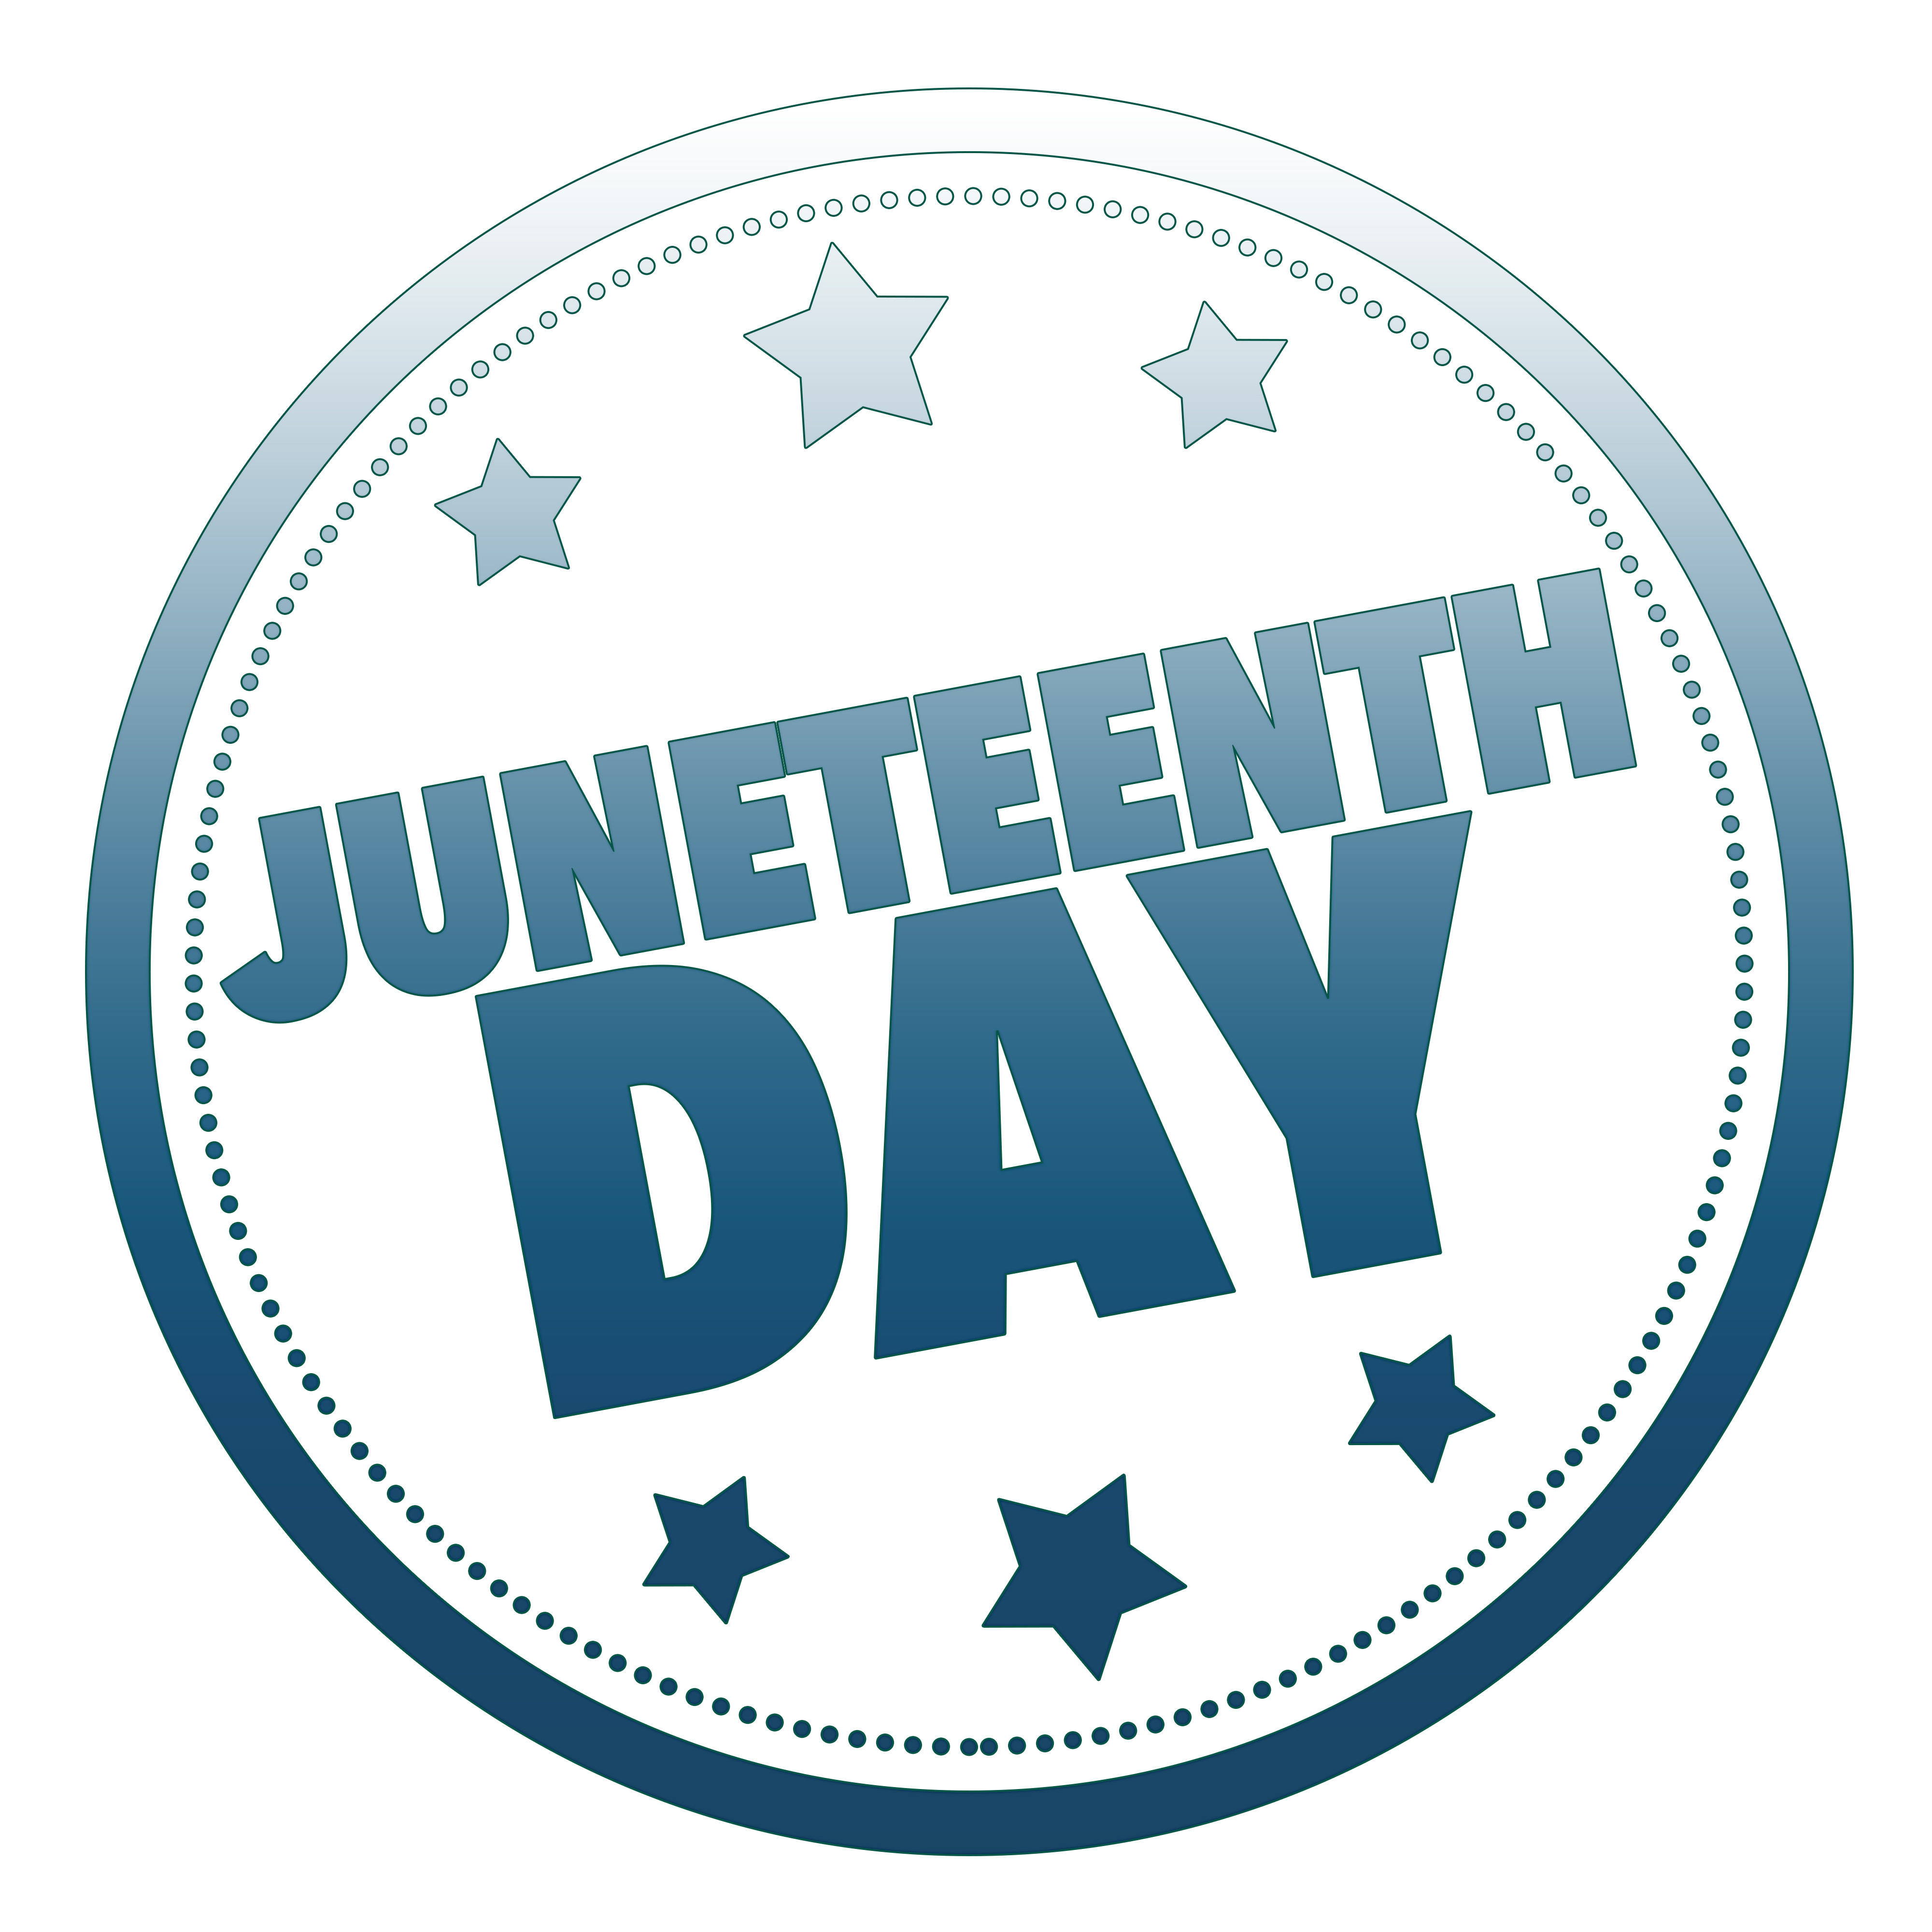 Juneteenth Festival: Saturday, June 16, in Innovation Quarter